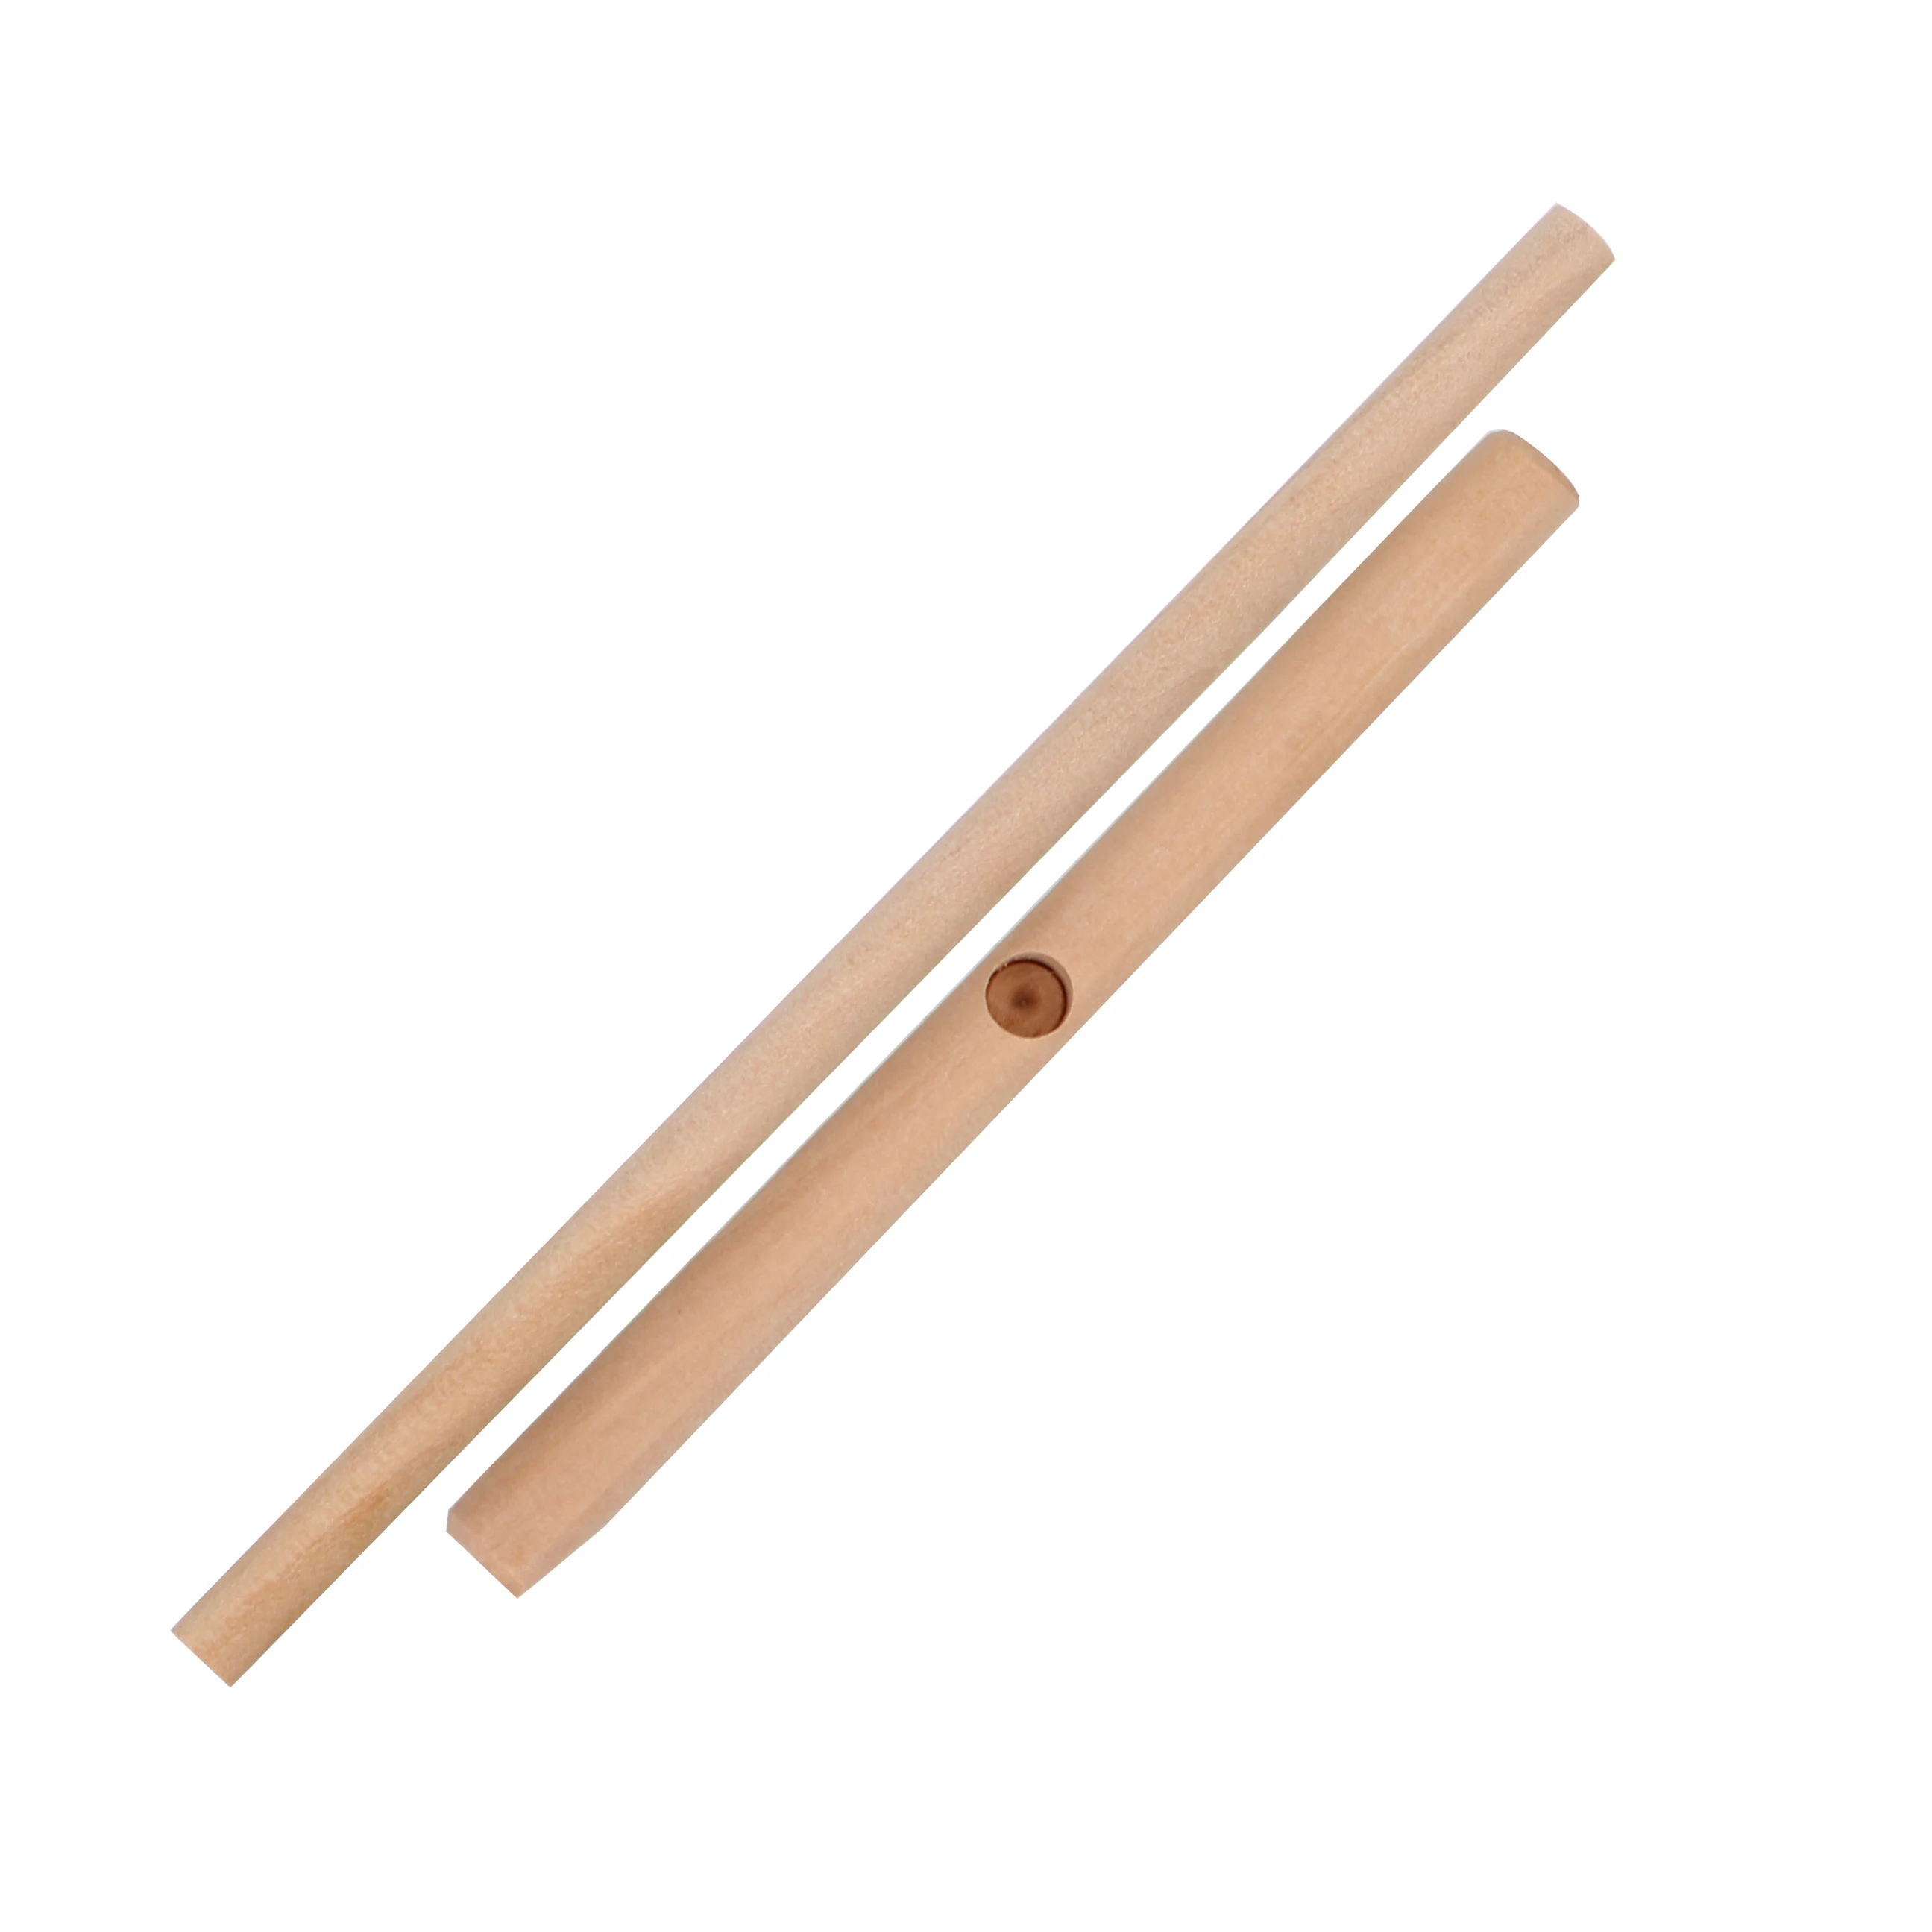 HILIFE блинница для блинной палки Блинный инструмент китайское особенное блинница деревянные инструменты для кухни дома